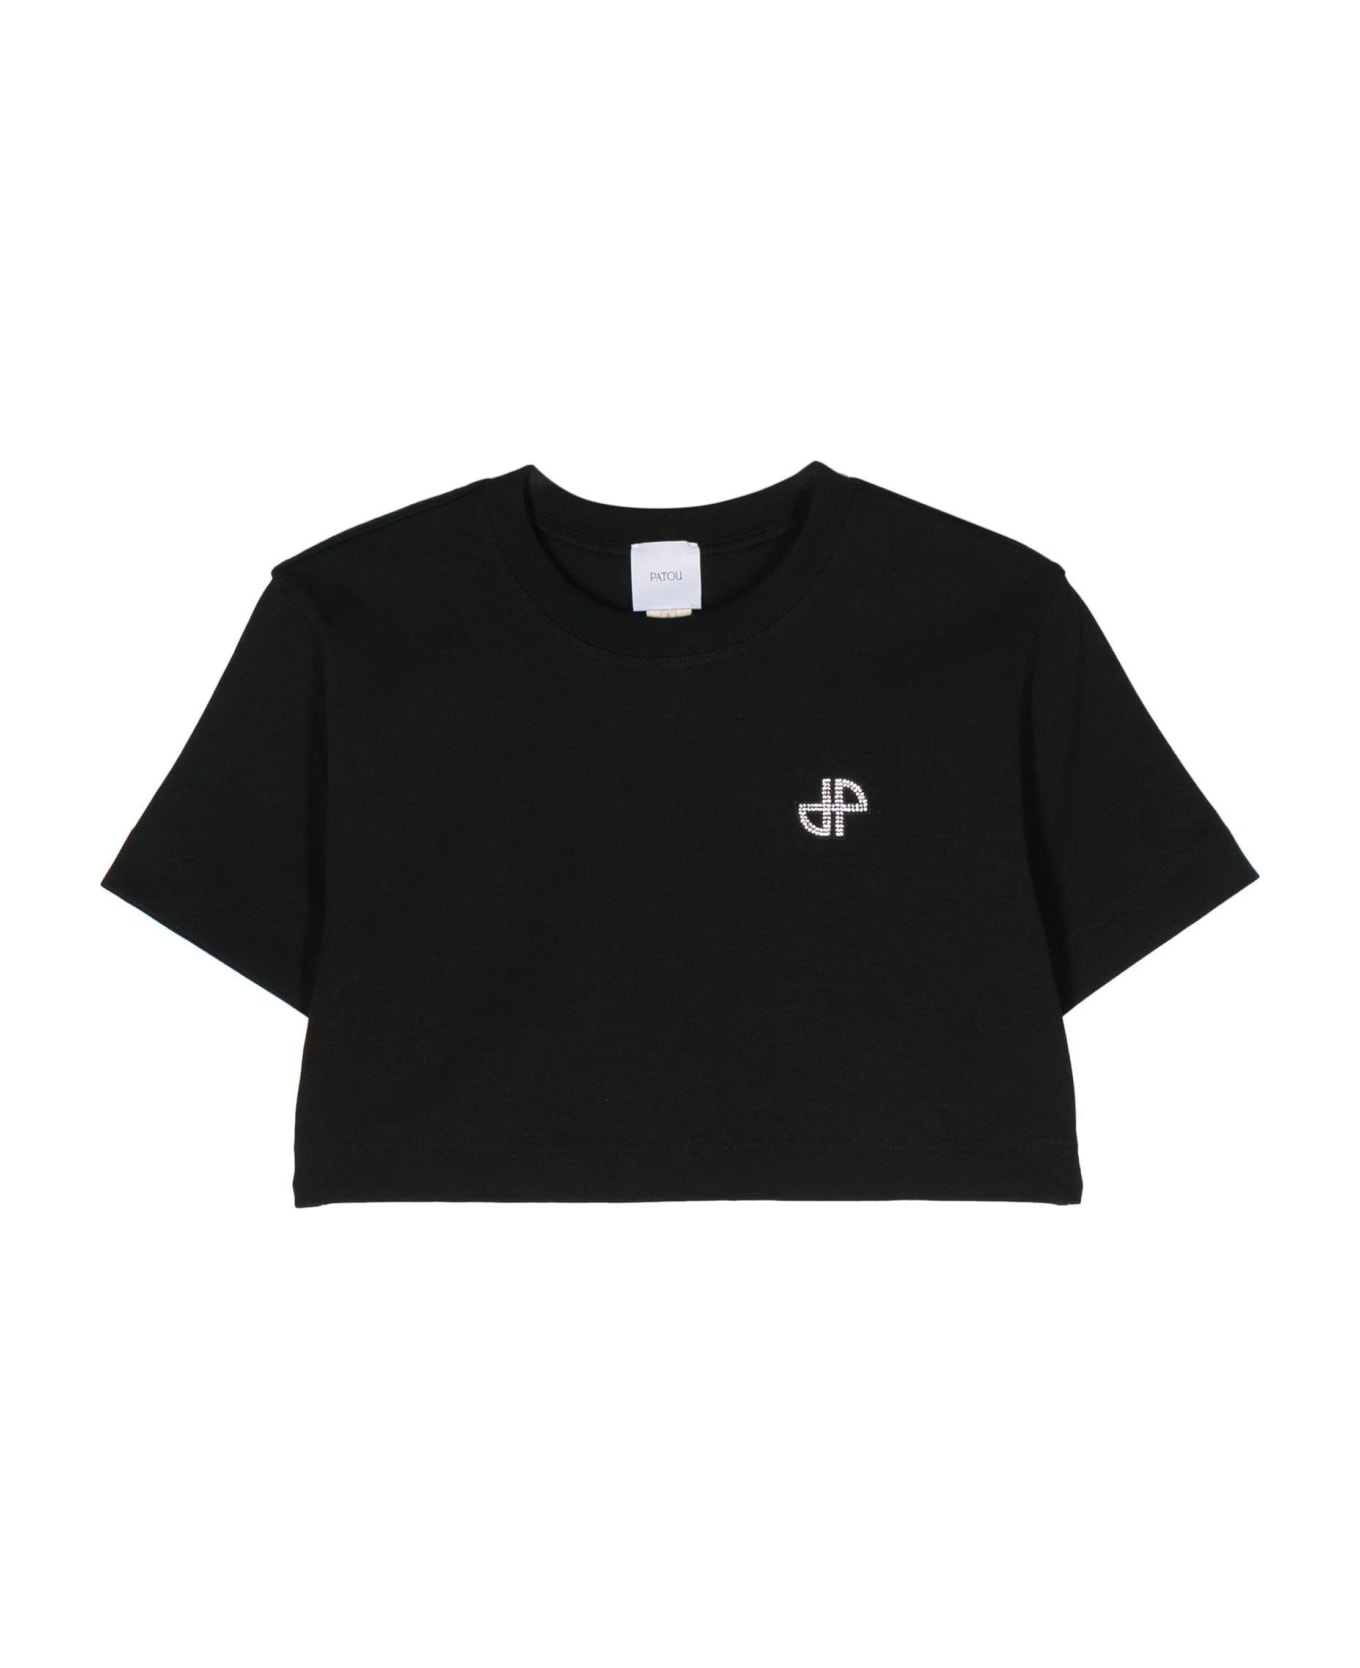 Patou Black Organic Cotton T-shirt - Black Tシャツ